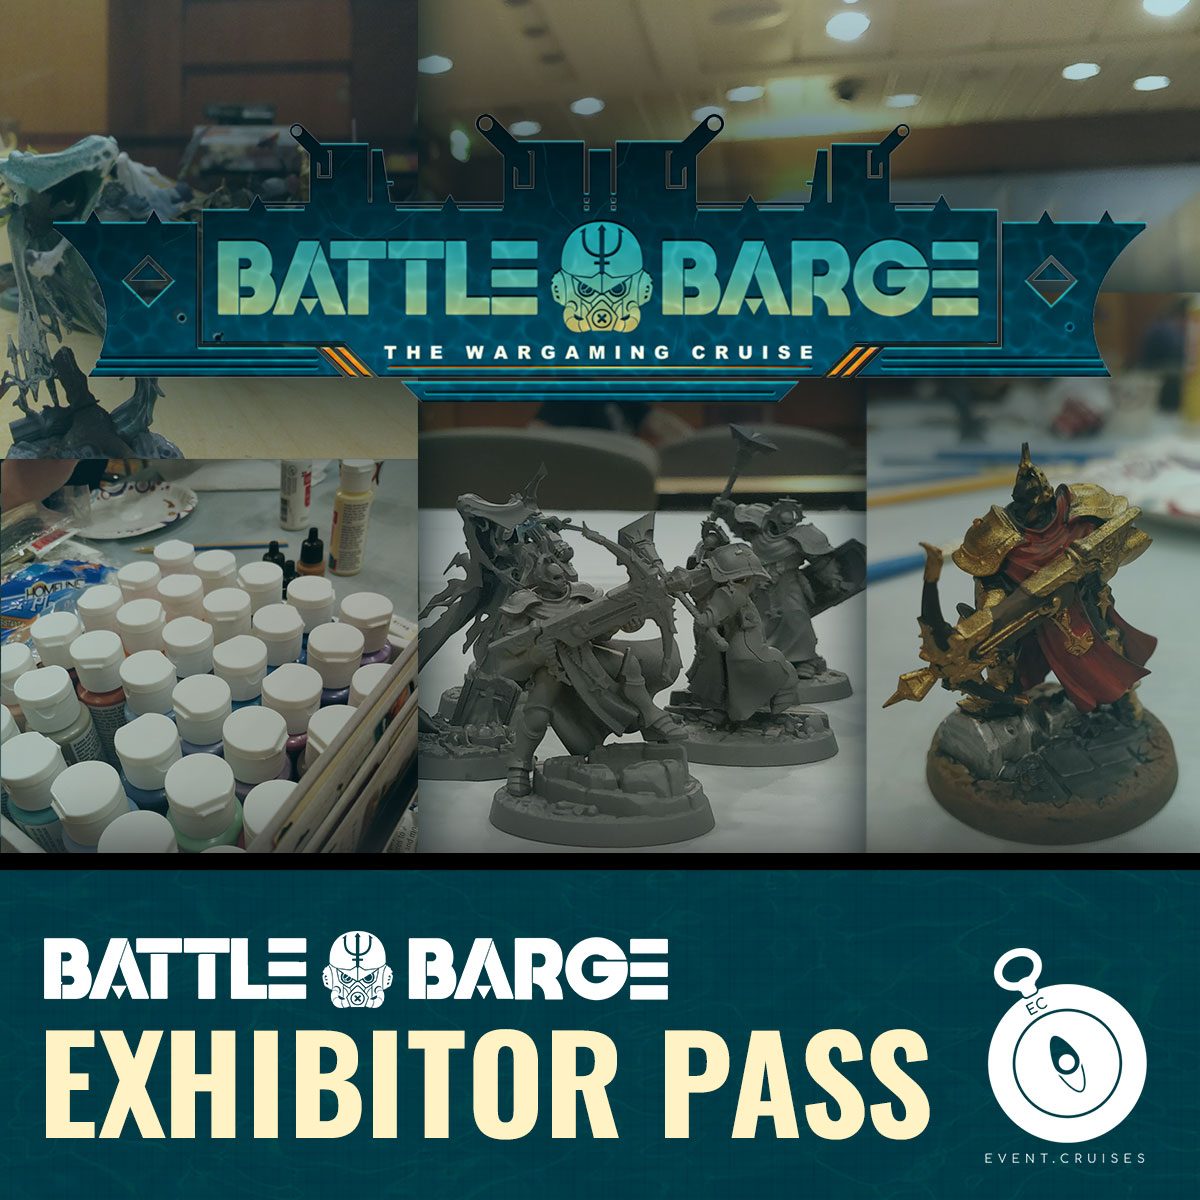 BB Battle Barge Cruise Exhibitor Product Image